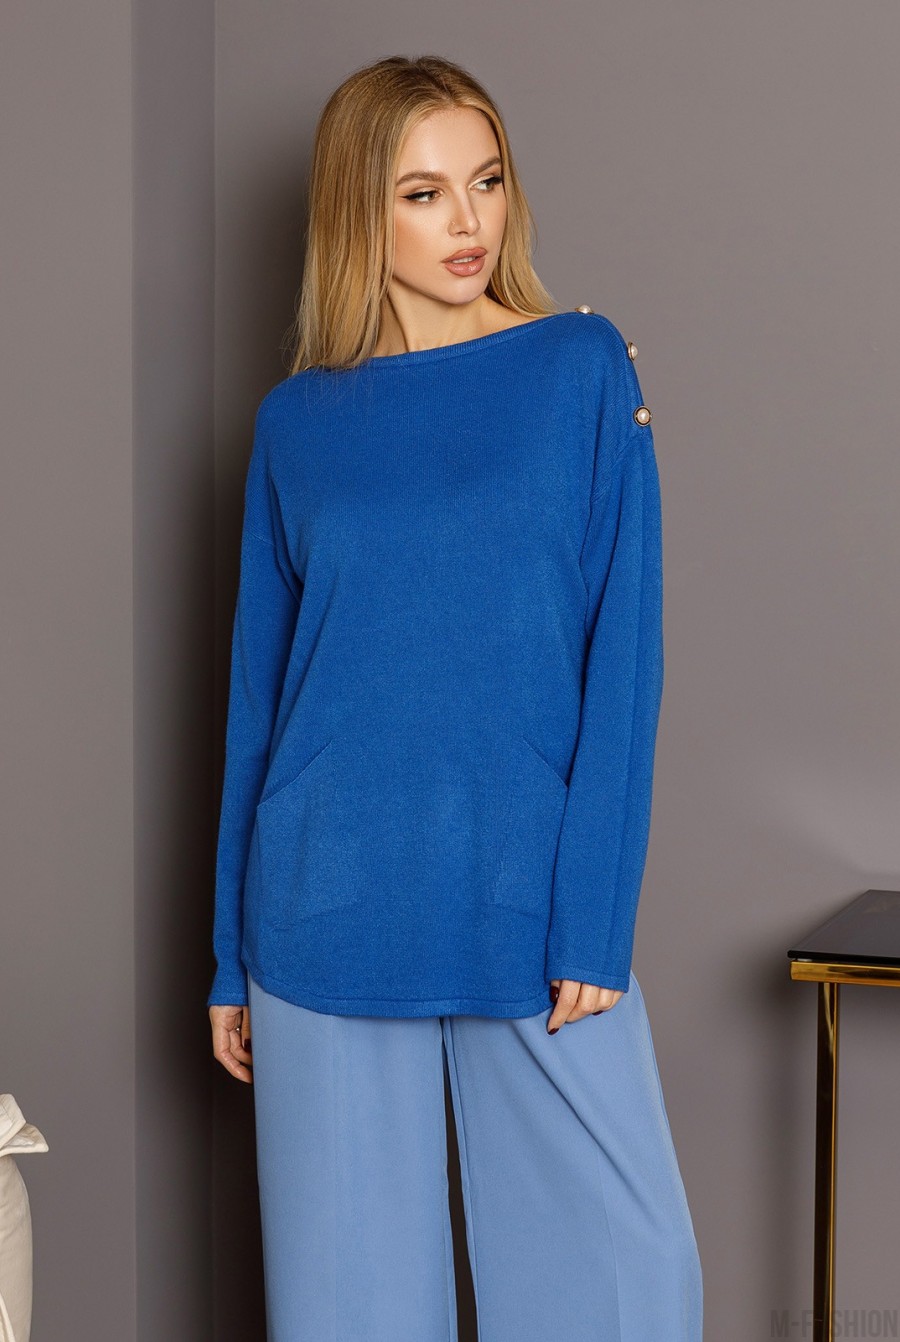 Синий ангоровый свитер с пуговицами на плечах - Фото 1